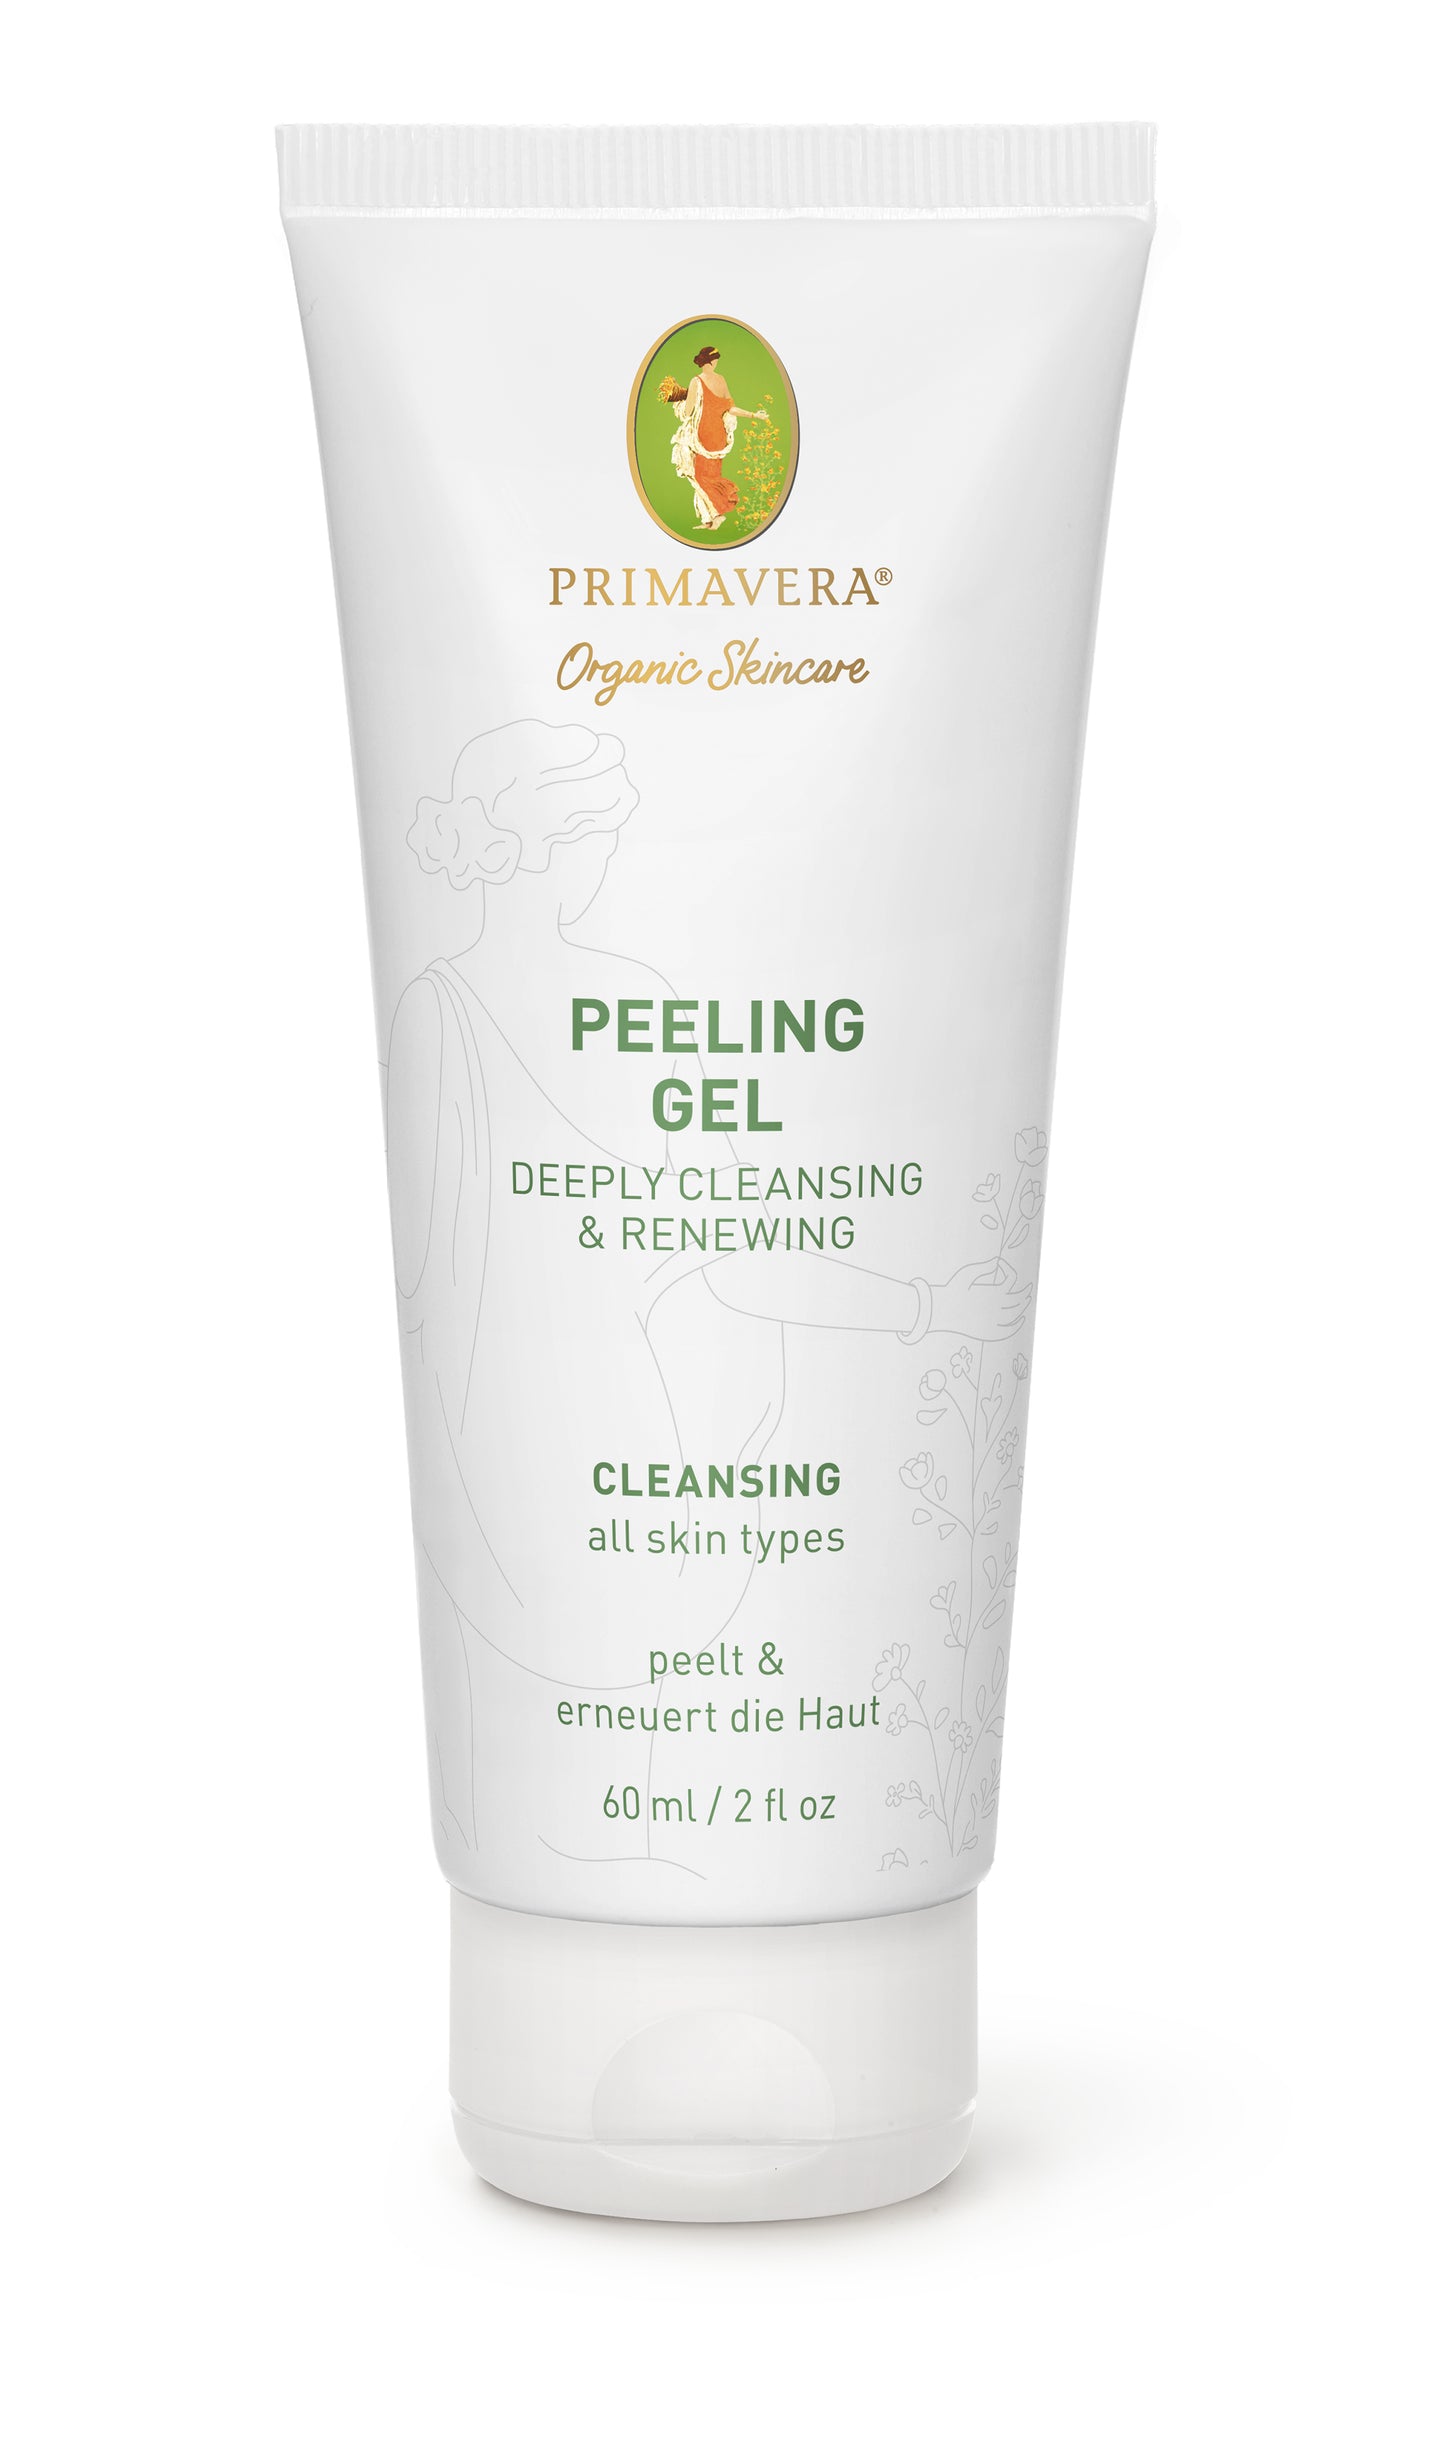 Primavera - Peeling Gel - Deeply Cleansing & Renewing 60 ml